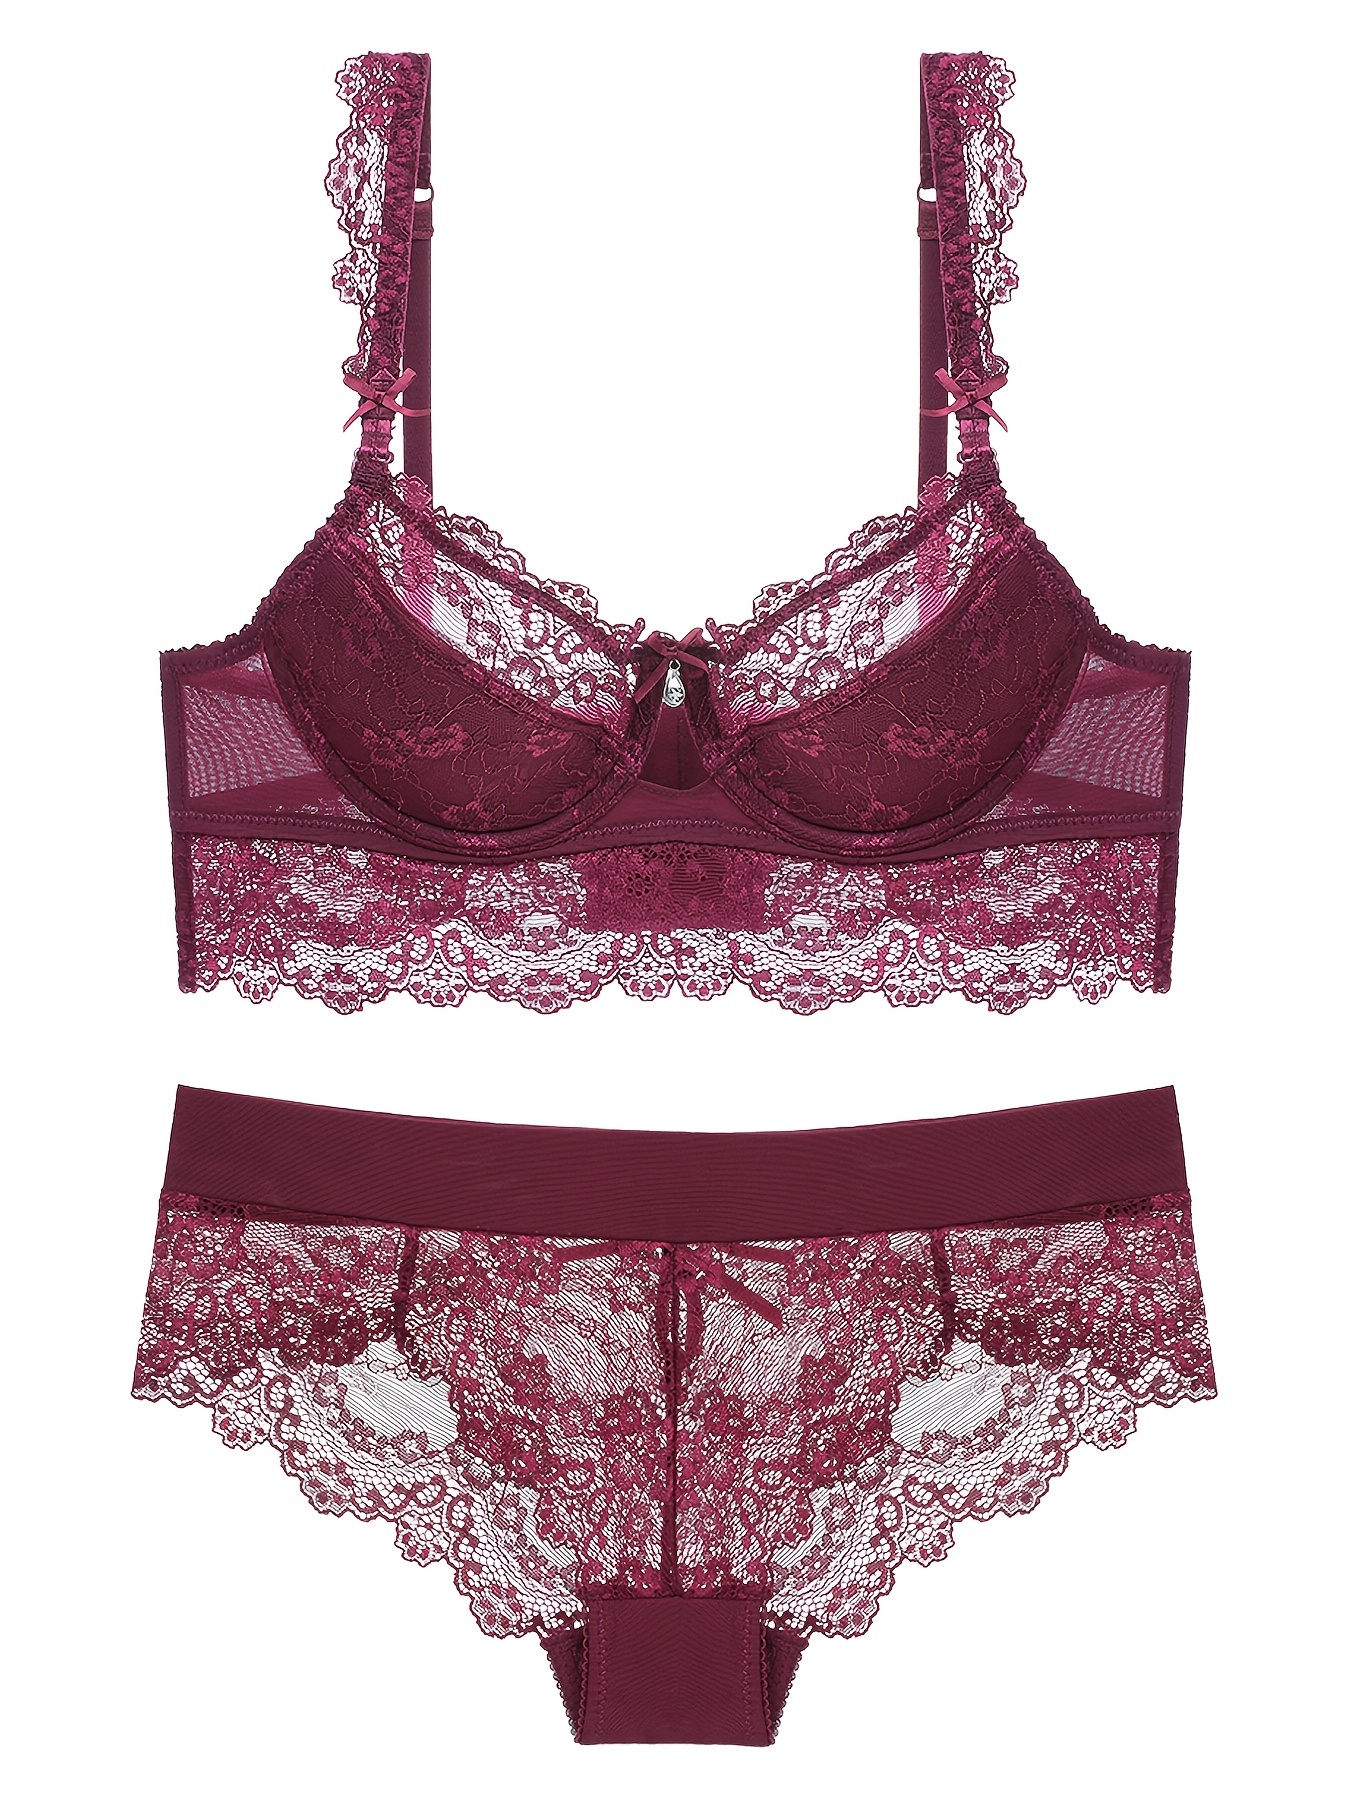 Sheer Lace Underwear & Bra Set Lingerie Wholesale - Burvogue